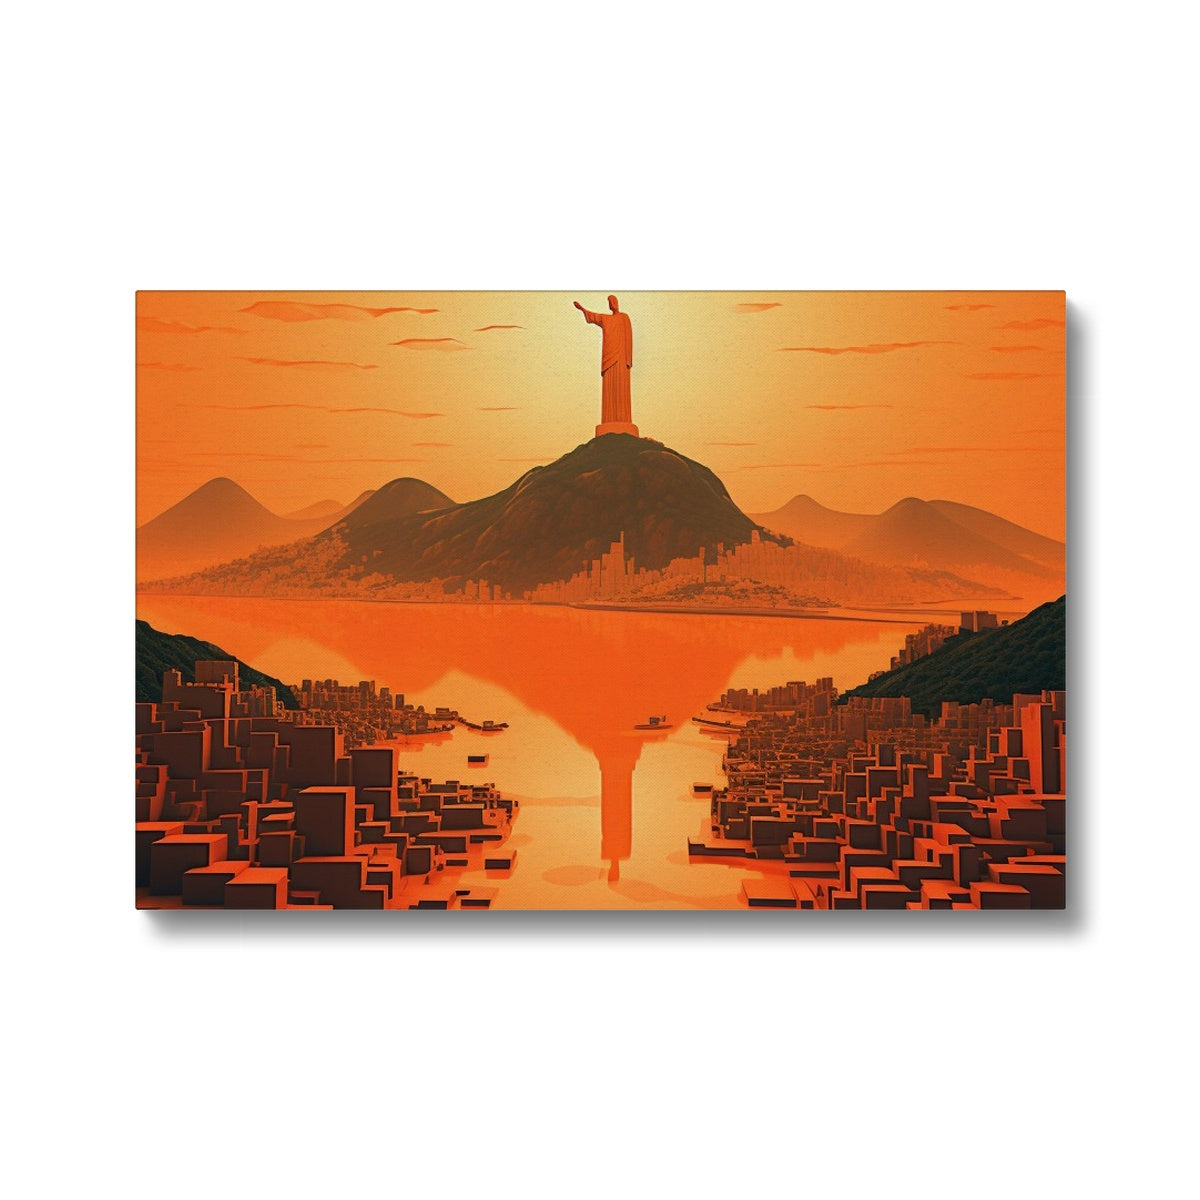 Rio De Janeiro From A Deep Perspective Canvas